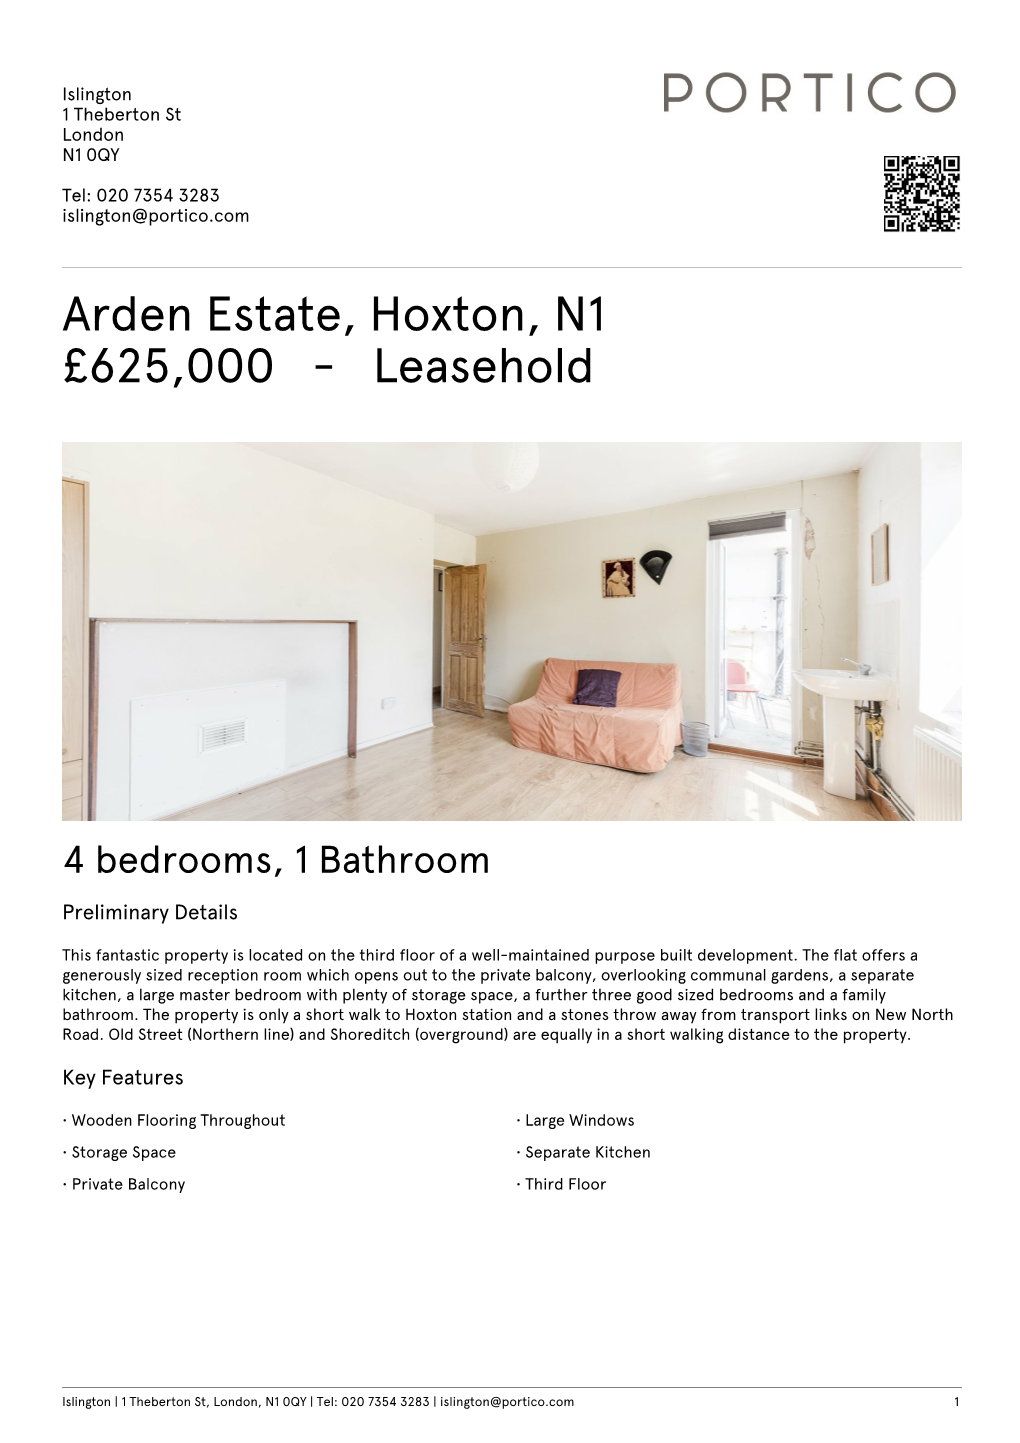 Arden Estate, Hoxton, N1 £625,000